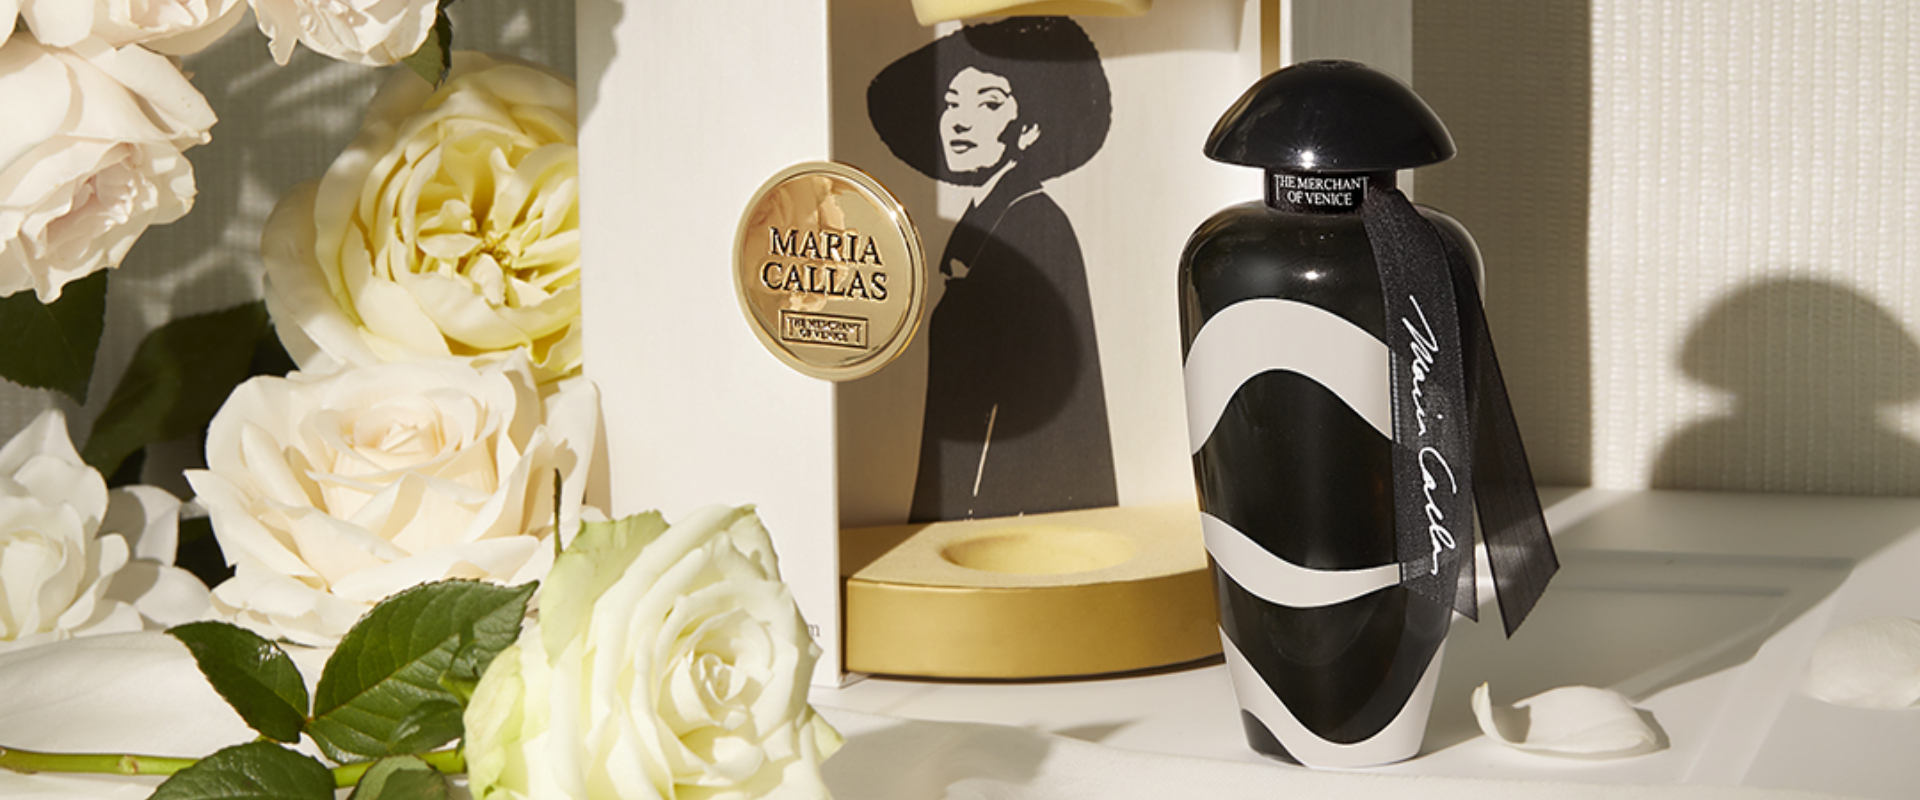 Maria Callas – zapach stworzony z okazji 100-lecia urodzin diwy wszechczasów